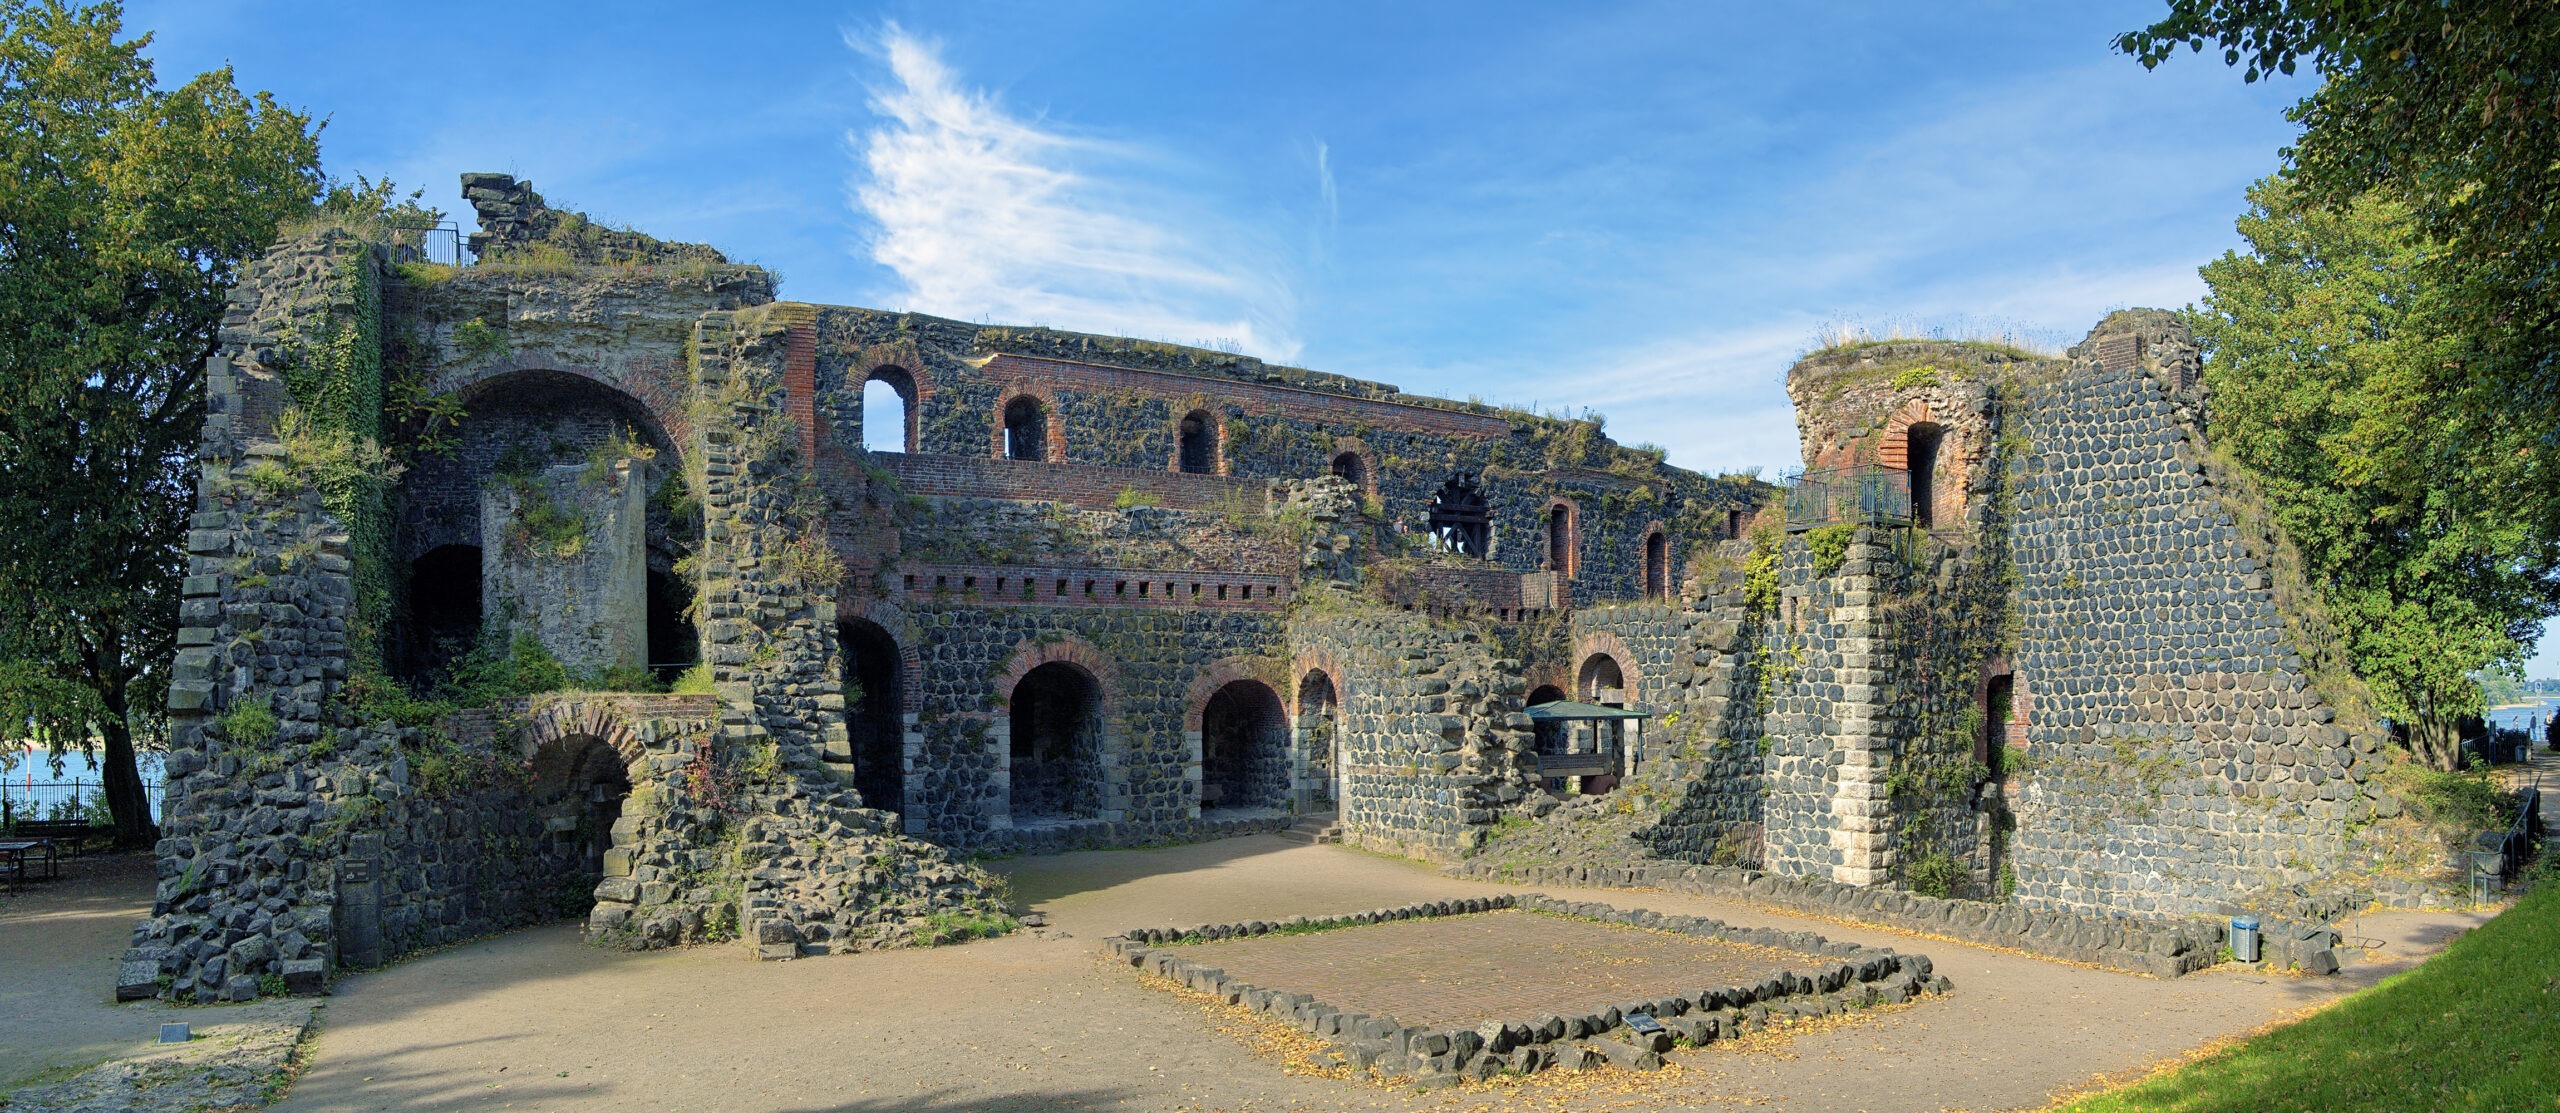 Ruins of Kaiserpfalz in Kaiserswerth district of Dusseldorf